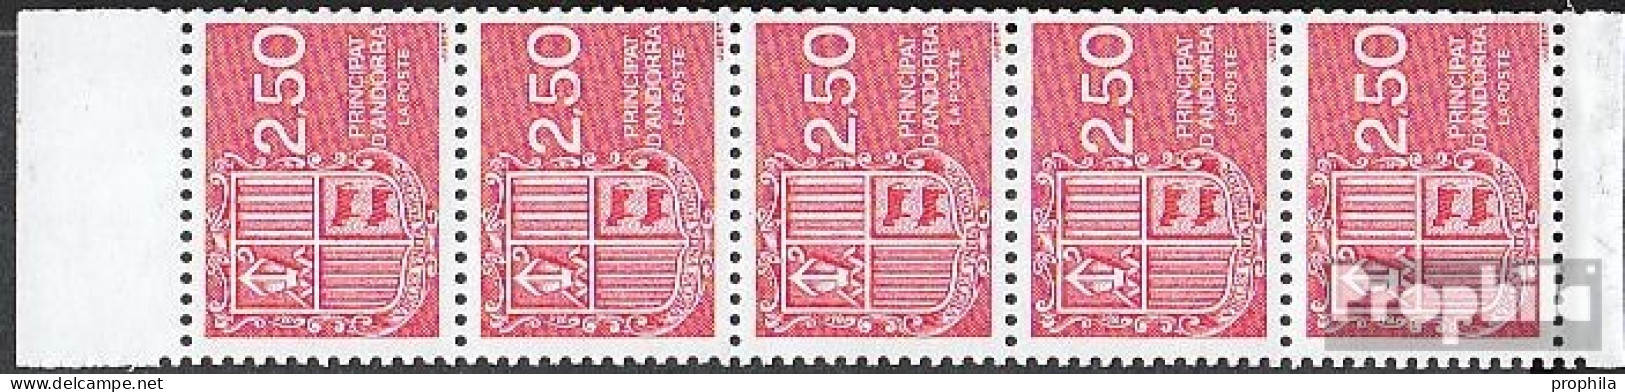 Andorra - Französische Post Hbl4 Postfrisch 1991 Freimarken: Wappen - Markenheftchen